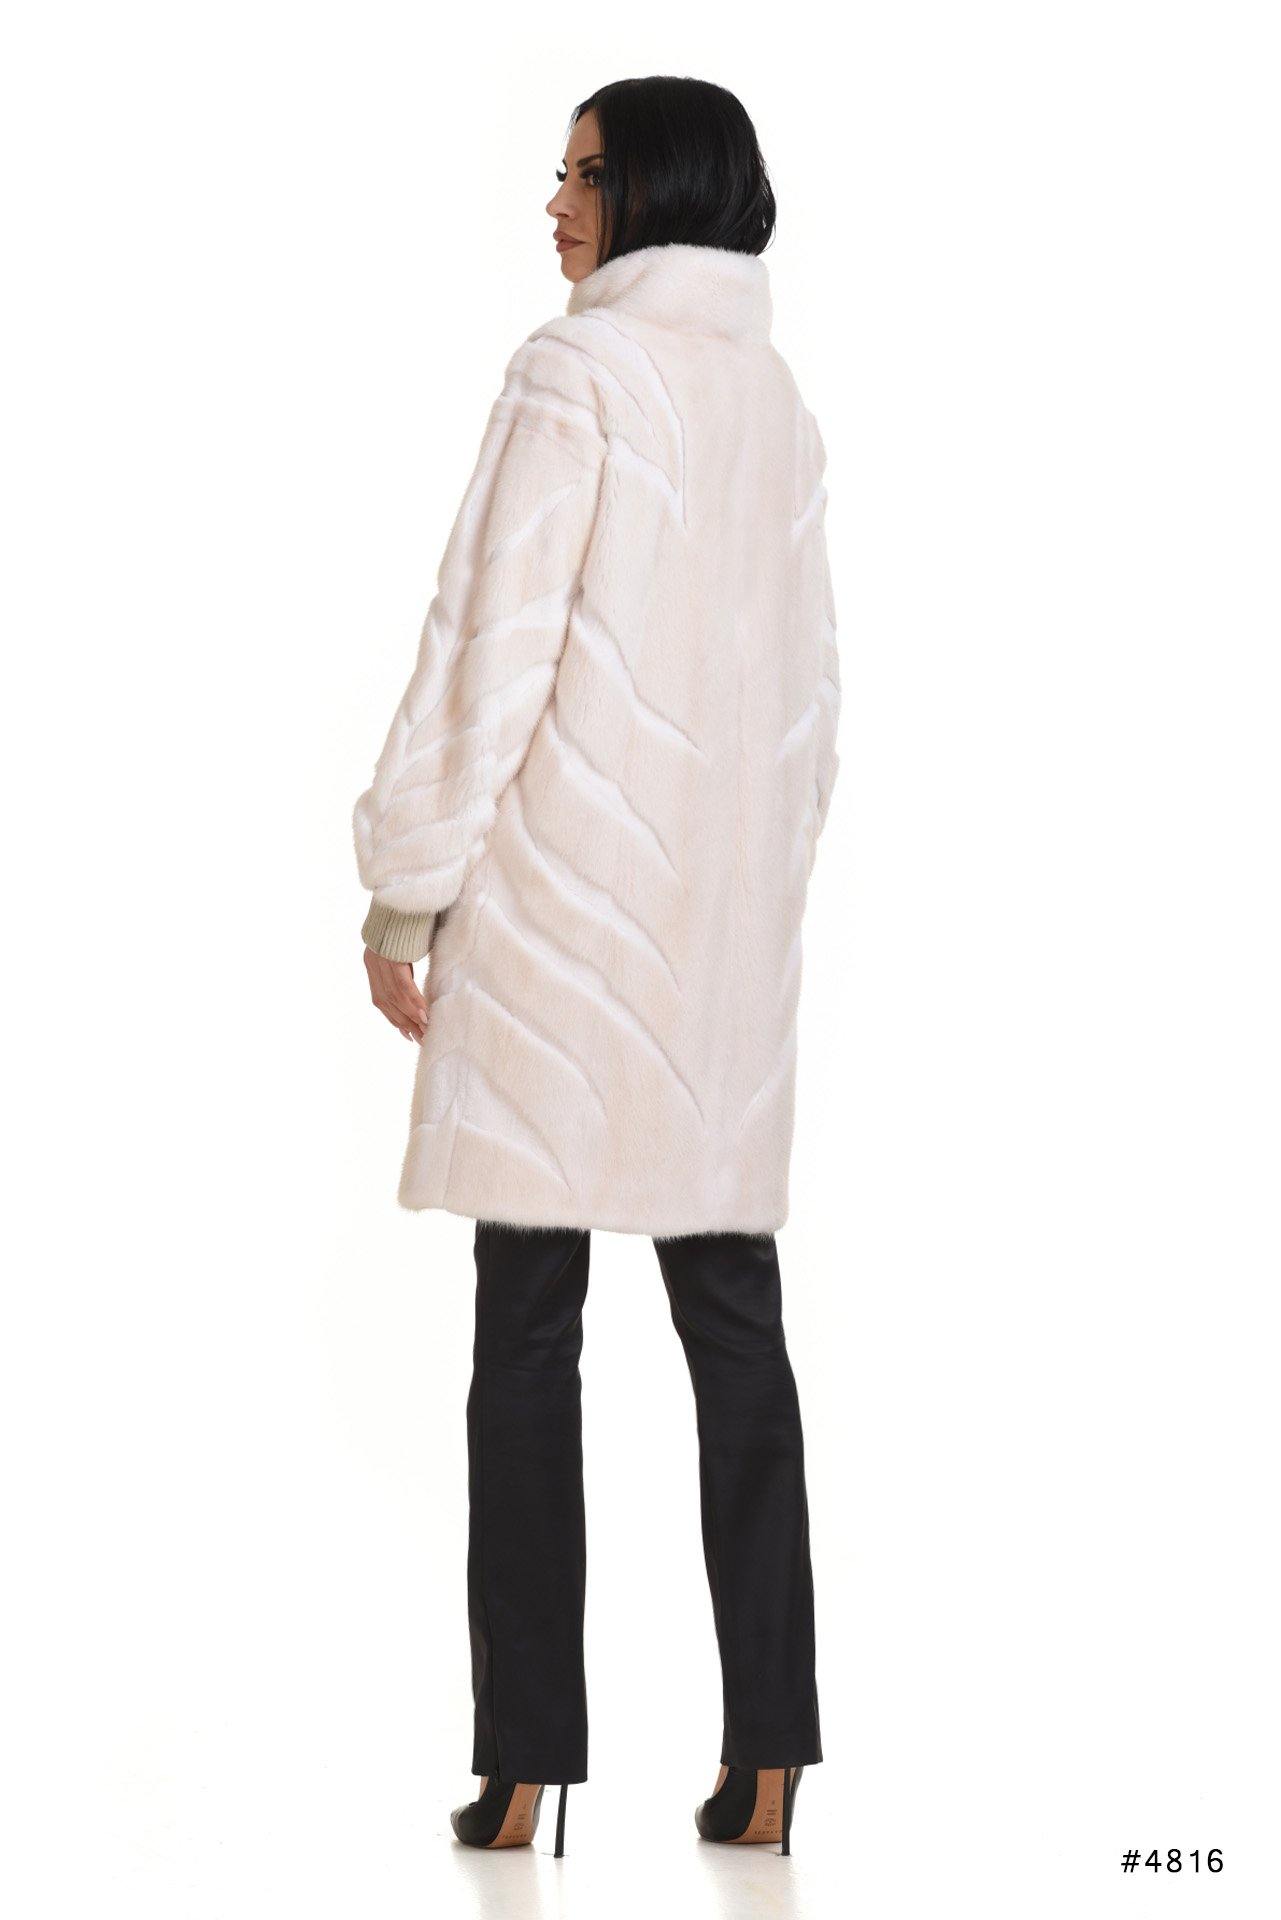 Exclusive mink coat with special design - Manakas Frankfurt